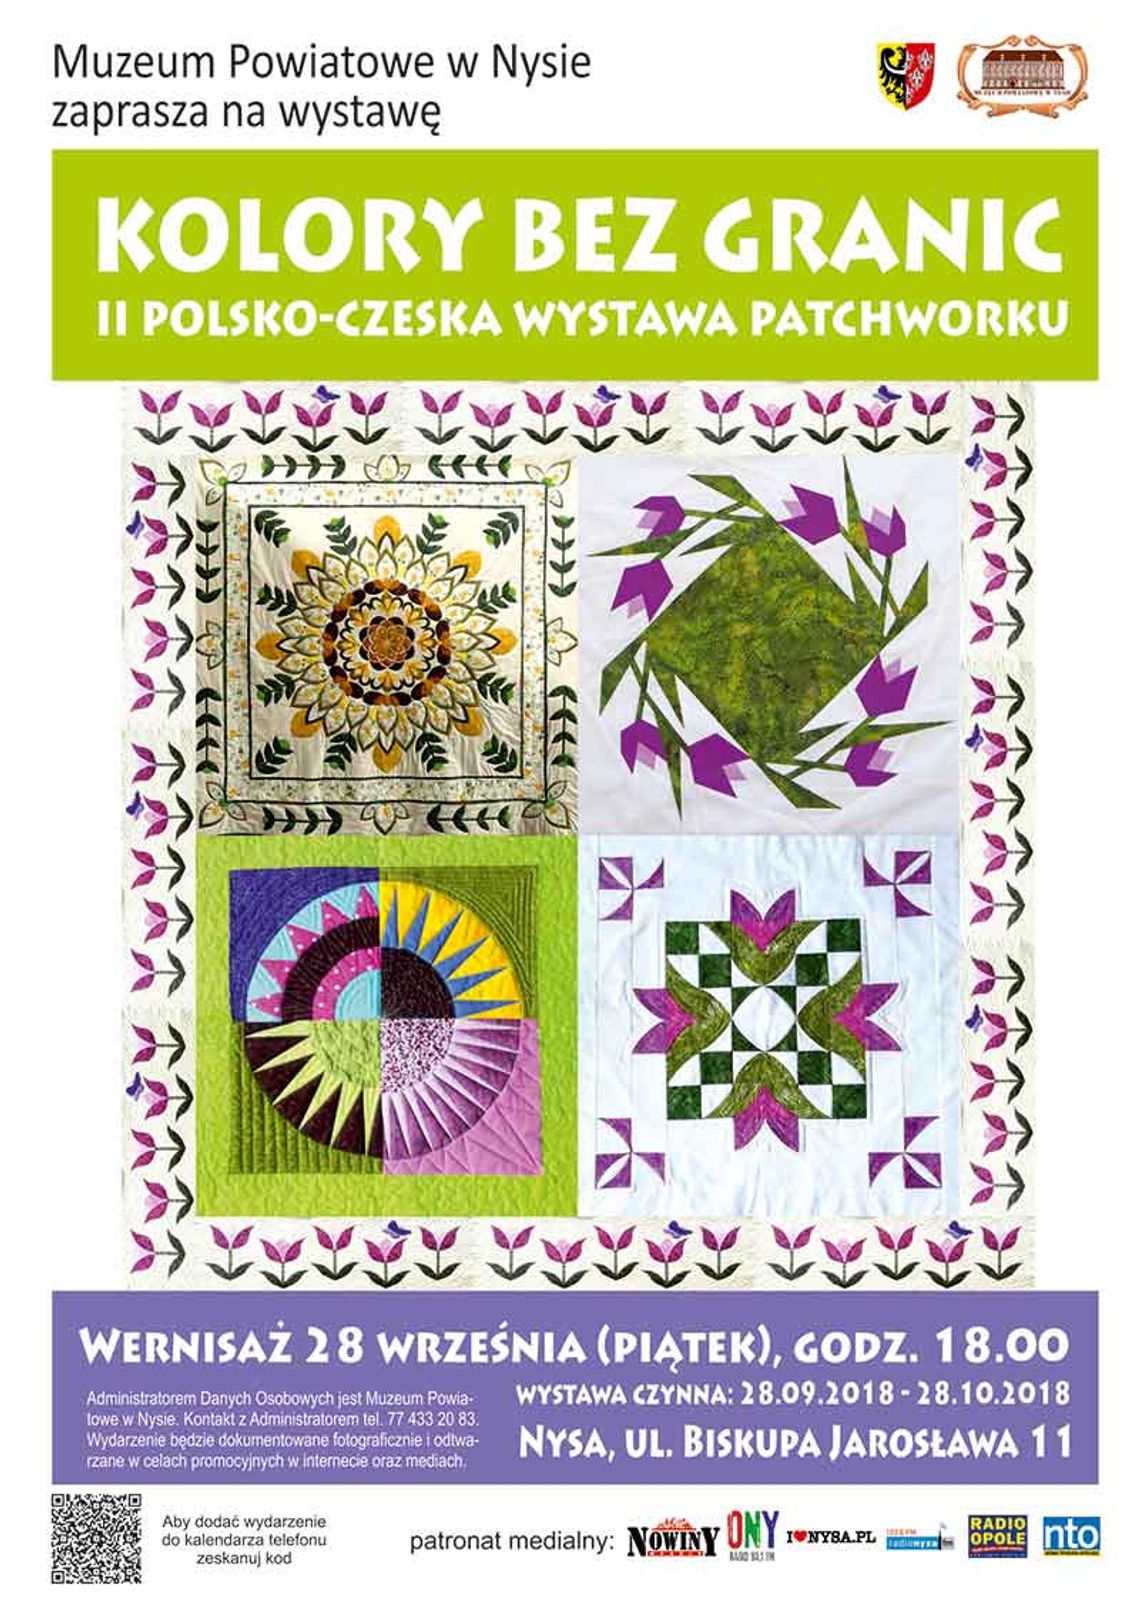 „KOLORY BEZ GRANIC - II polsko-czeska wystawa patchworku”